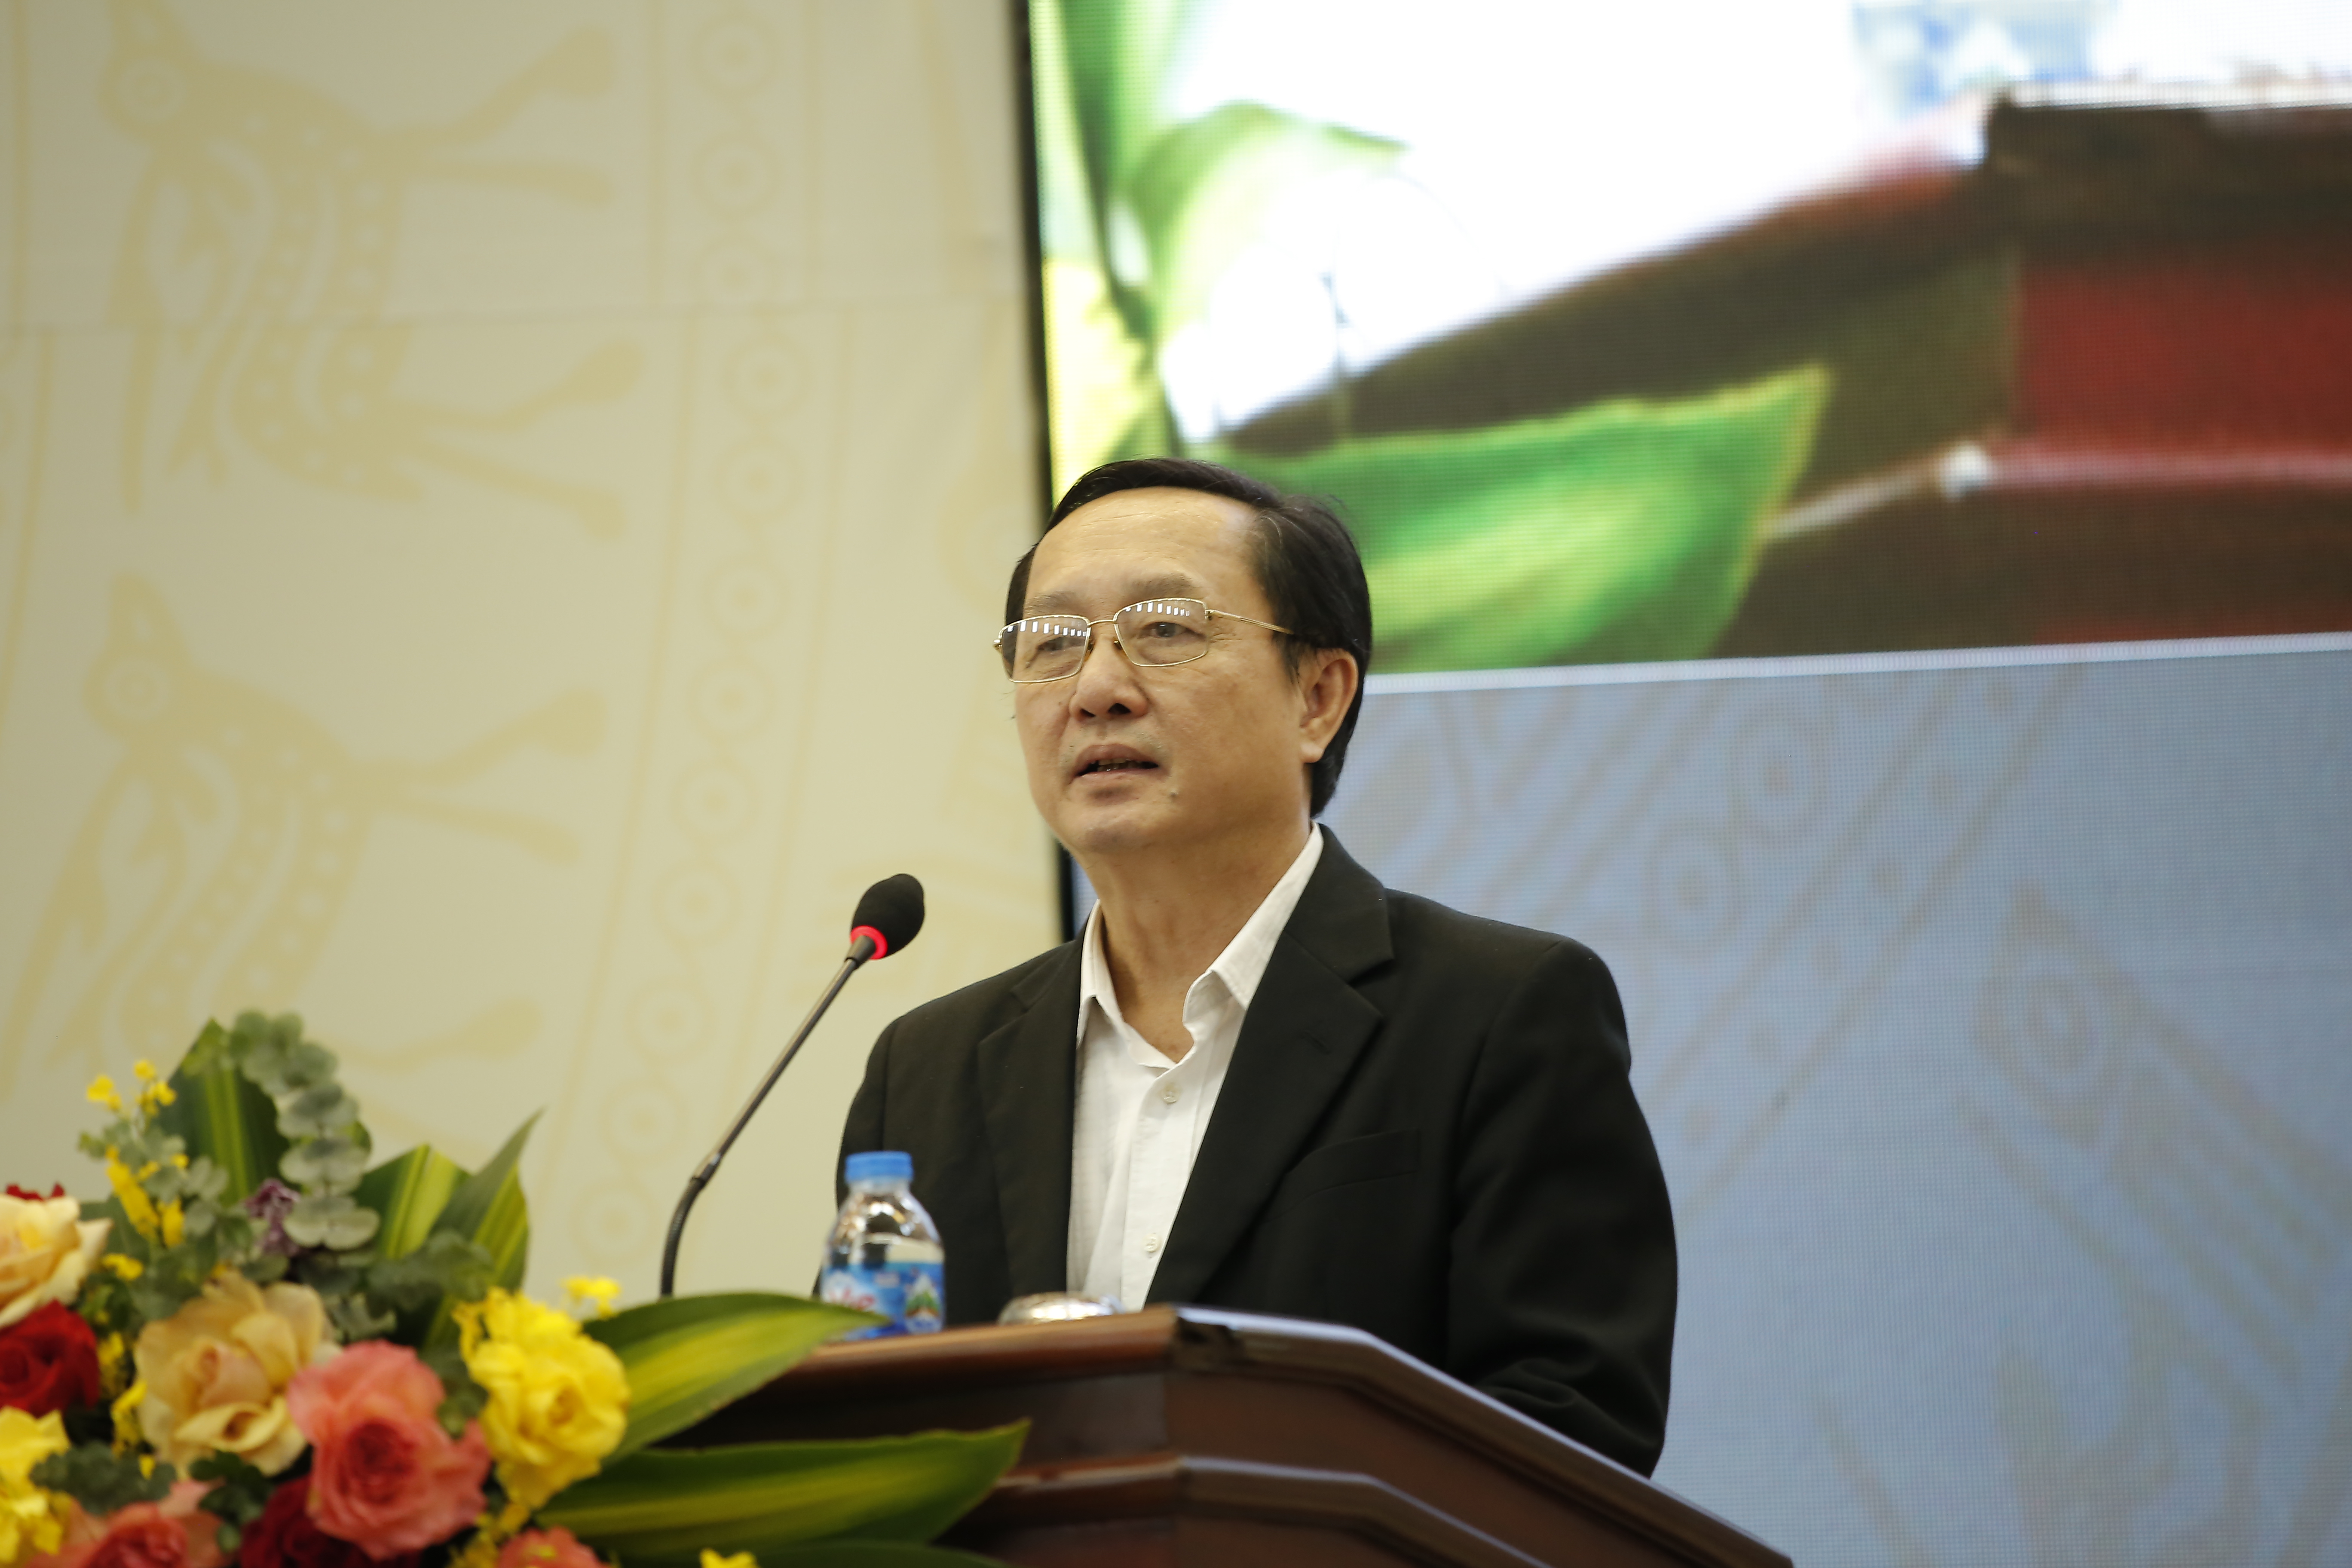 Bộ trưởng Bộ KH&CN Huỳnh Thành Đạt phát biểu trong hội thảo. Ảnh: TA